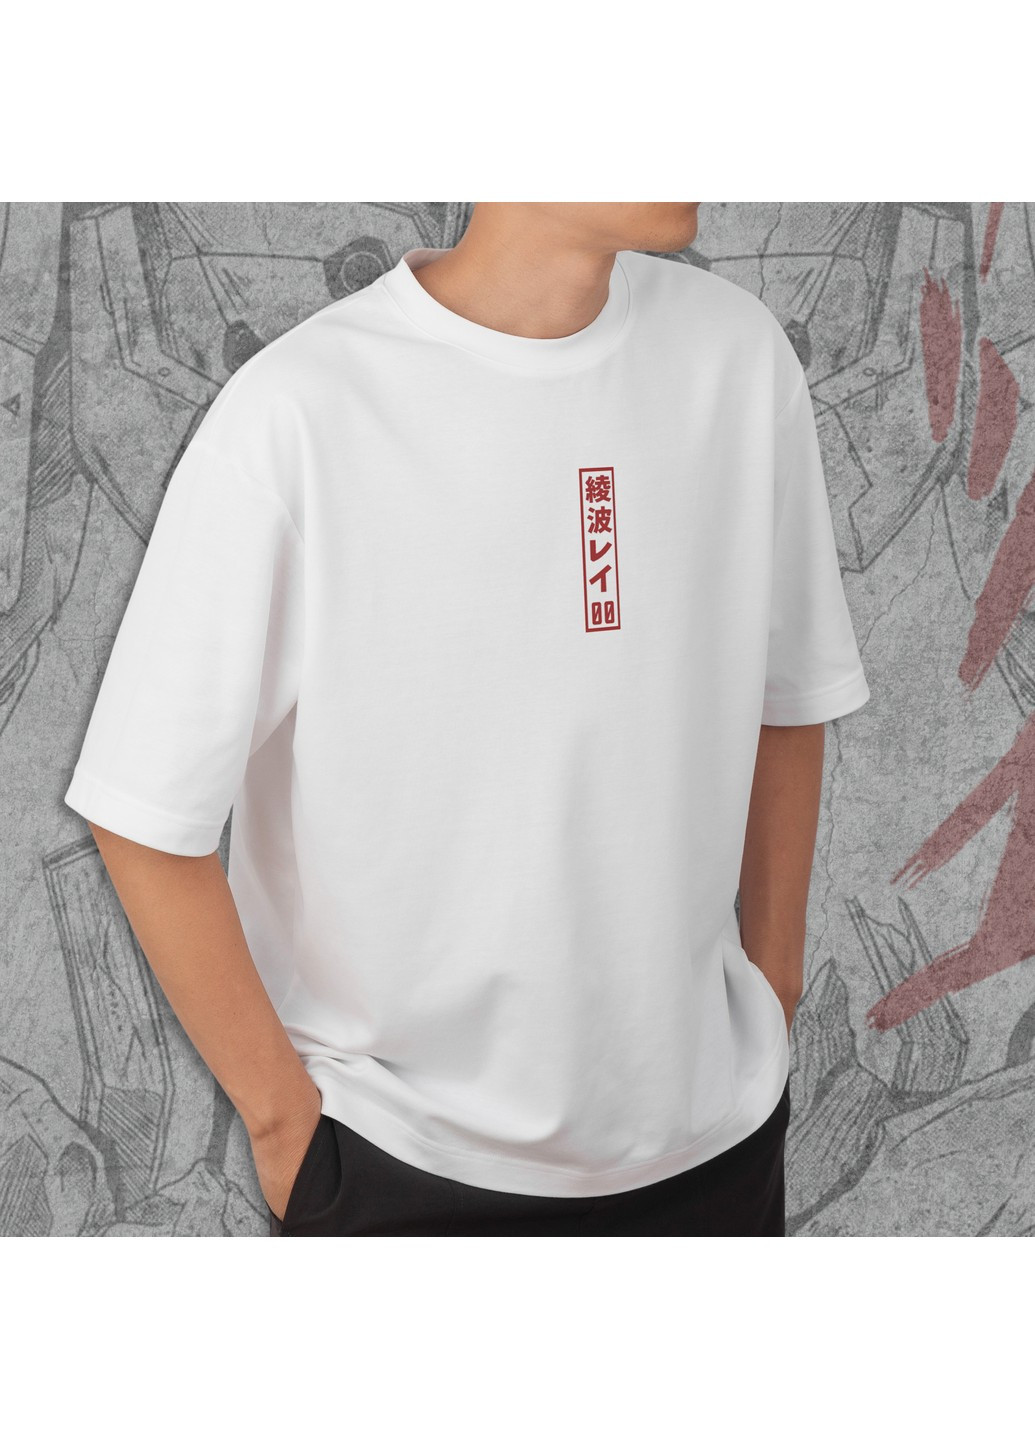 Біла футболка з принтом євангелион - юніт 00 No Brand